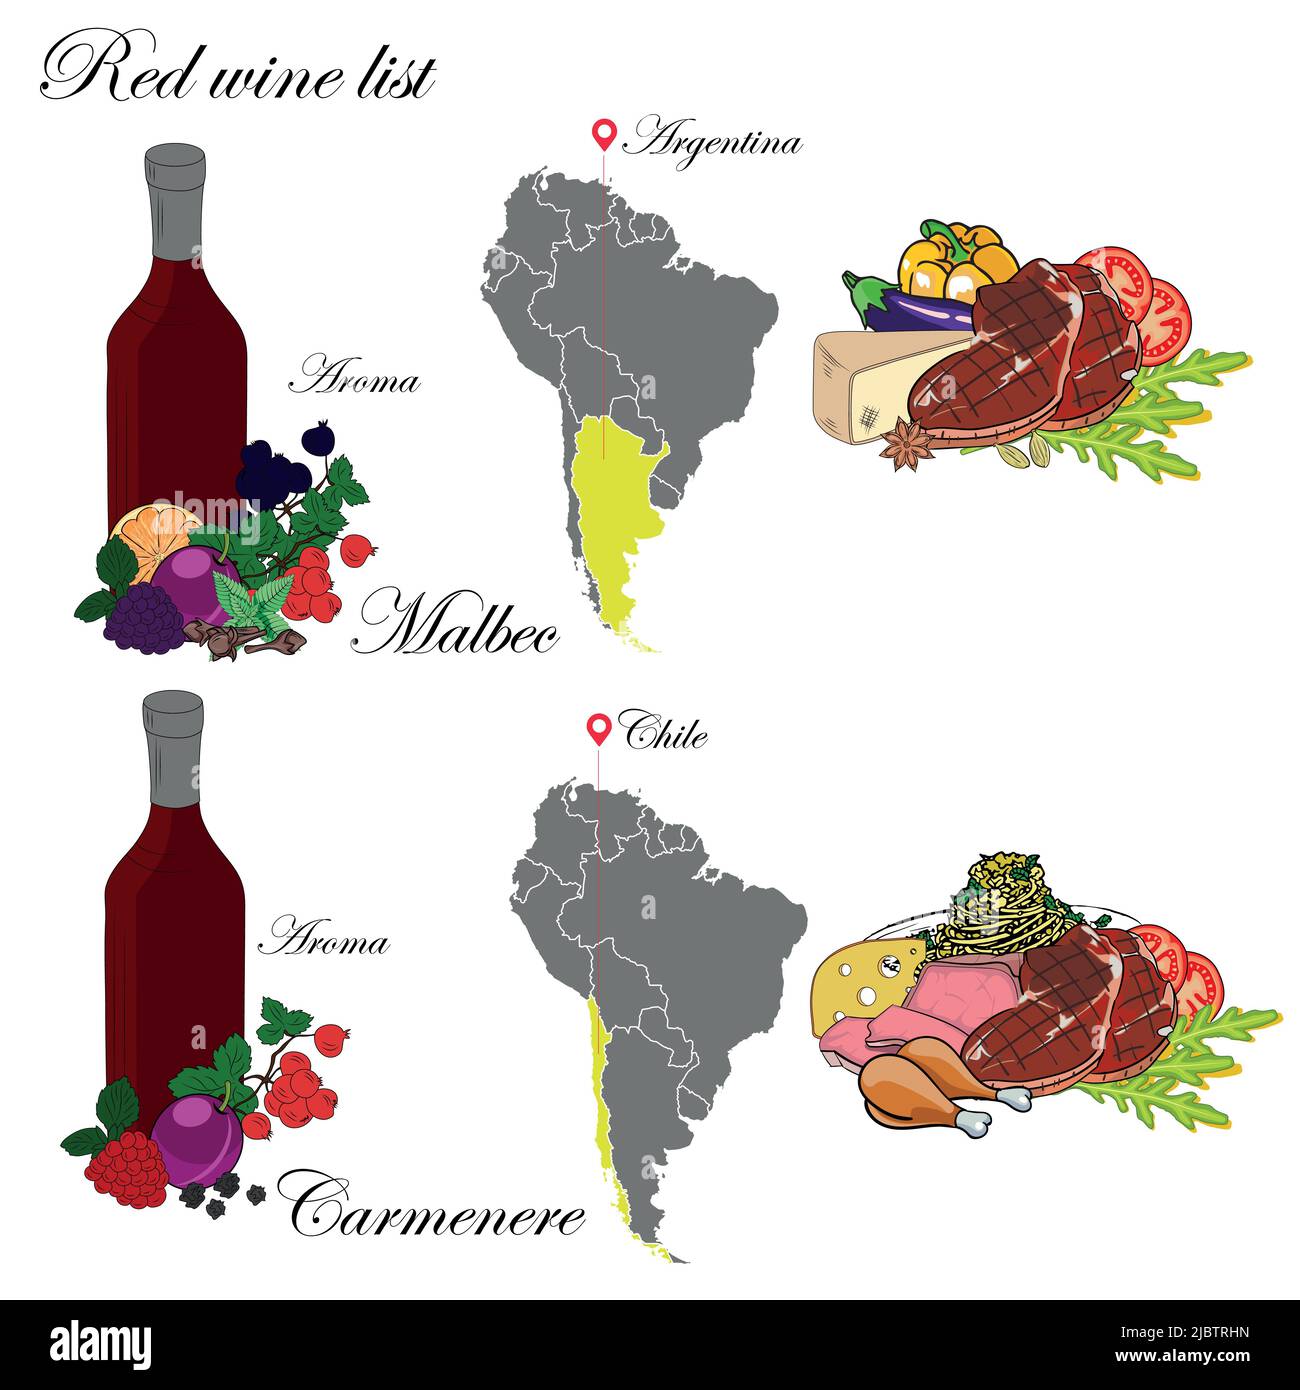 Malbec e Carmenere. La carta dei vini. Un'illustrazione di un vino rosso con un esempio di aromi, una mappa dei vigneti e cibo che si abbina al vino. Illustrazione Vettoriale